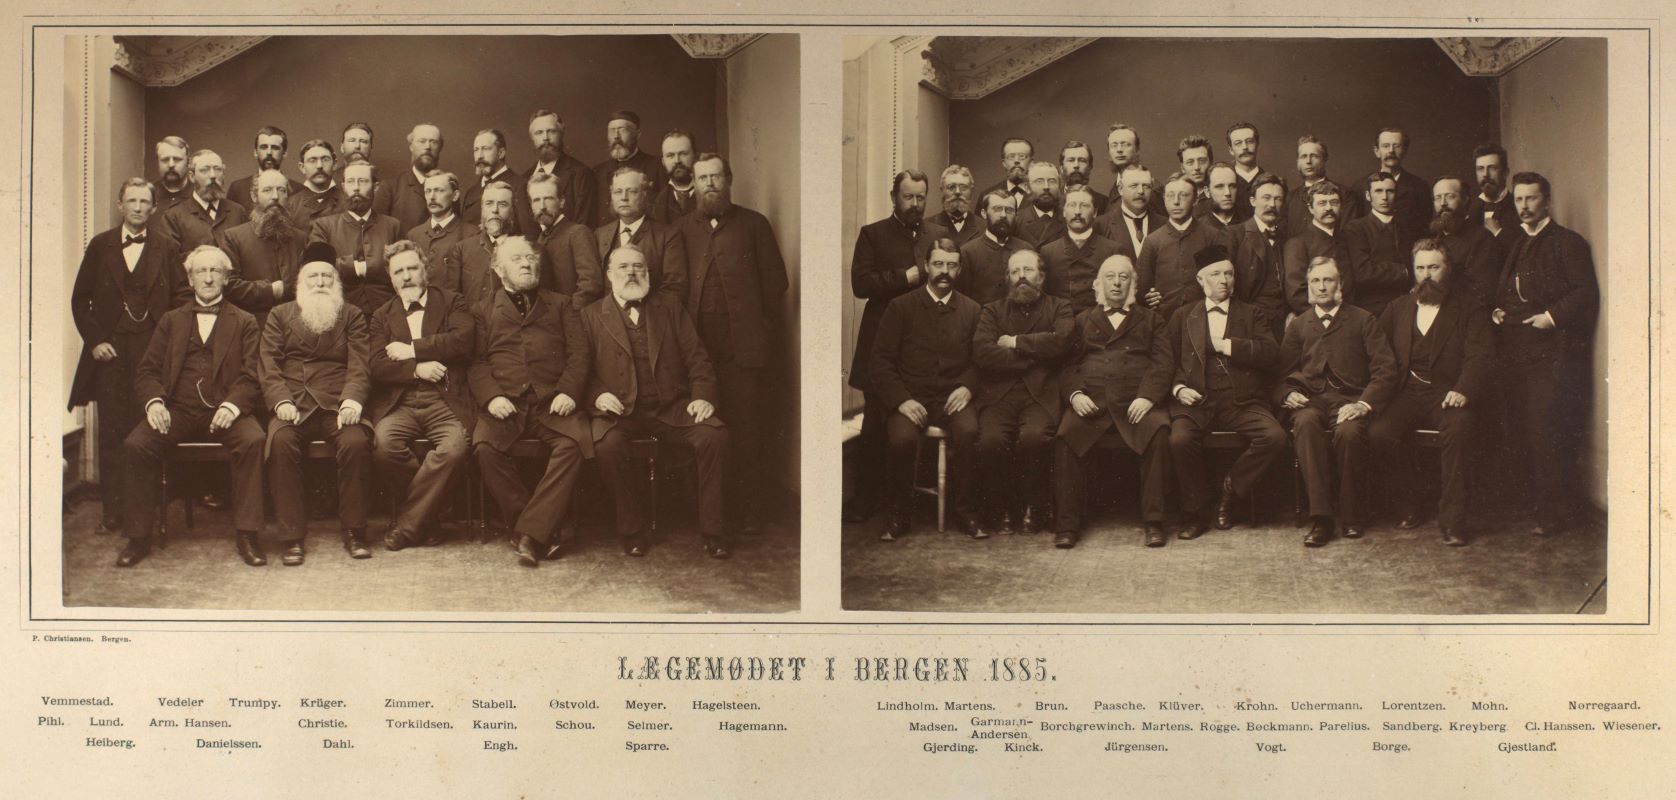 Fra legemøtet i Bergen i 1885.